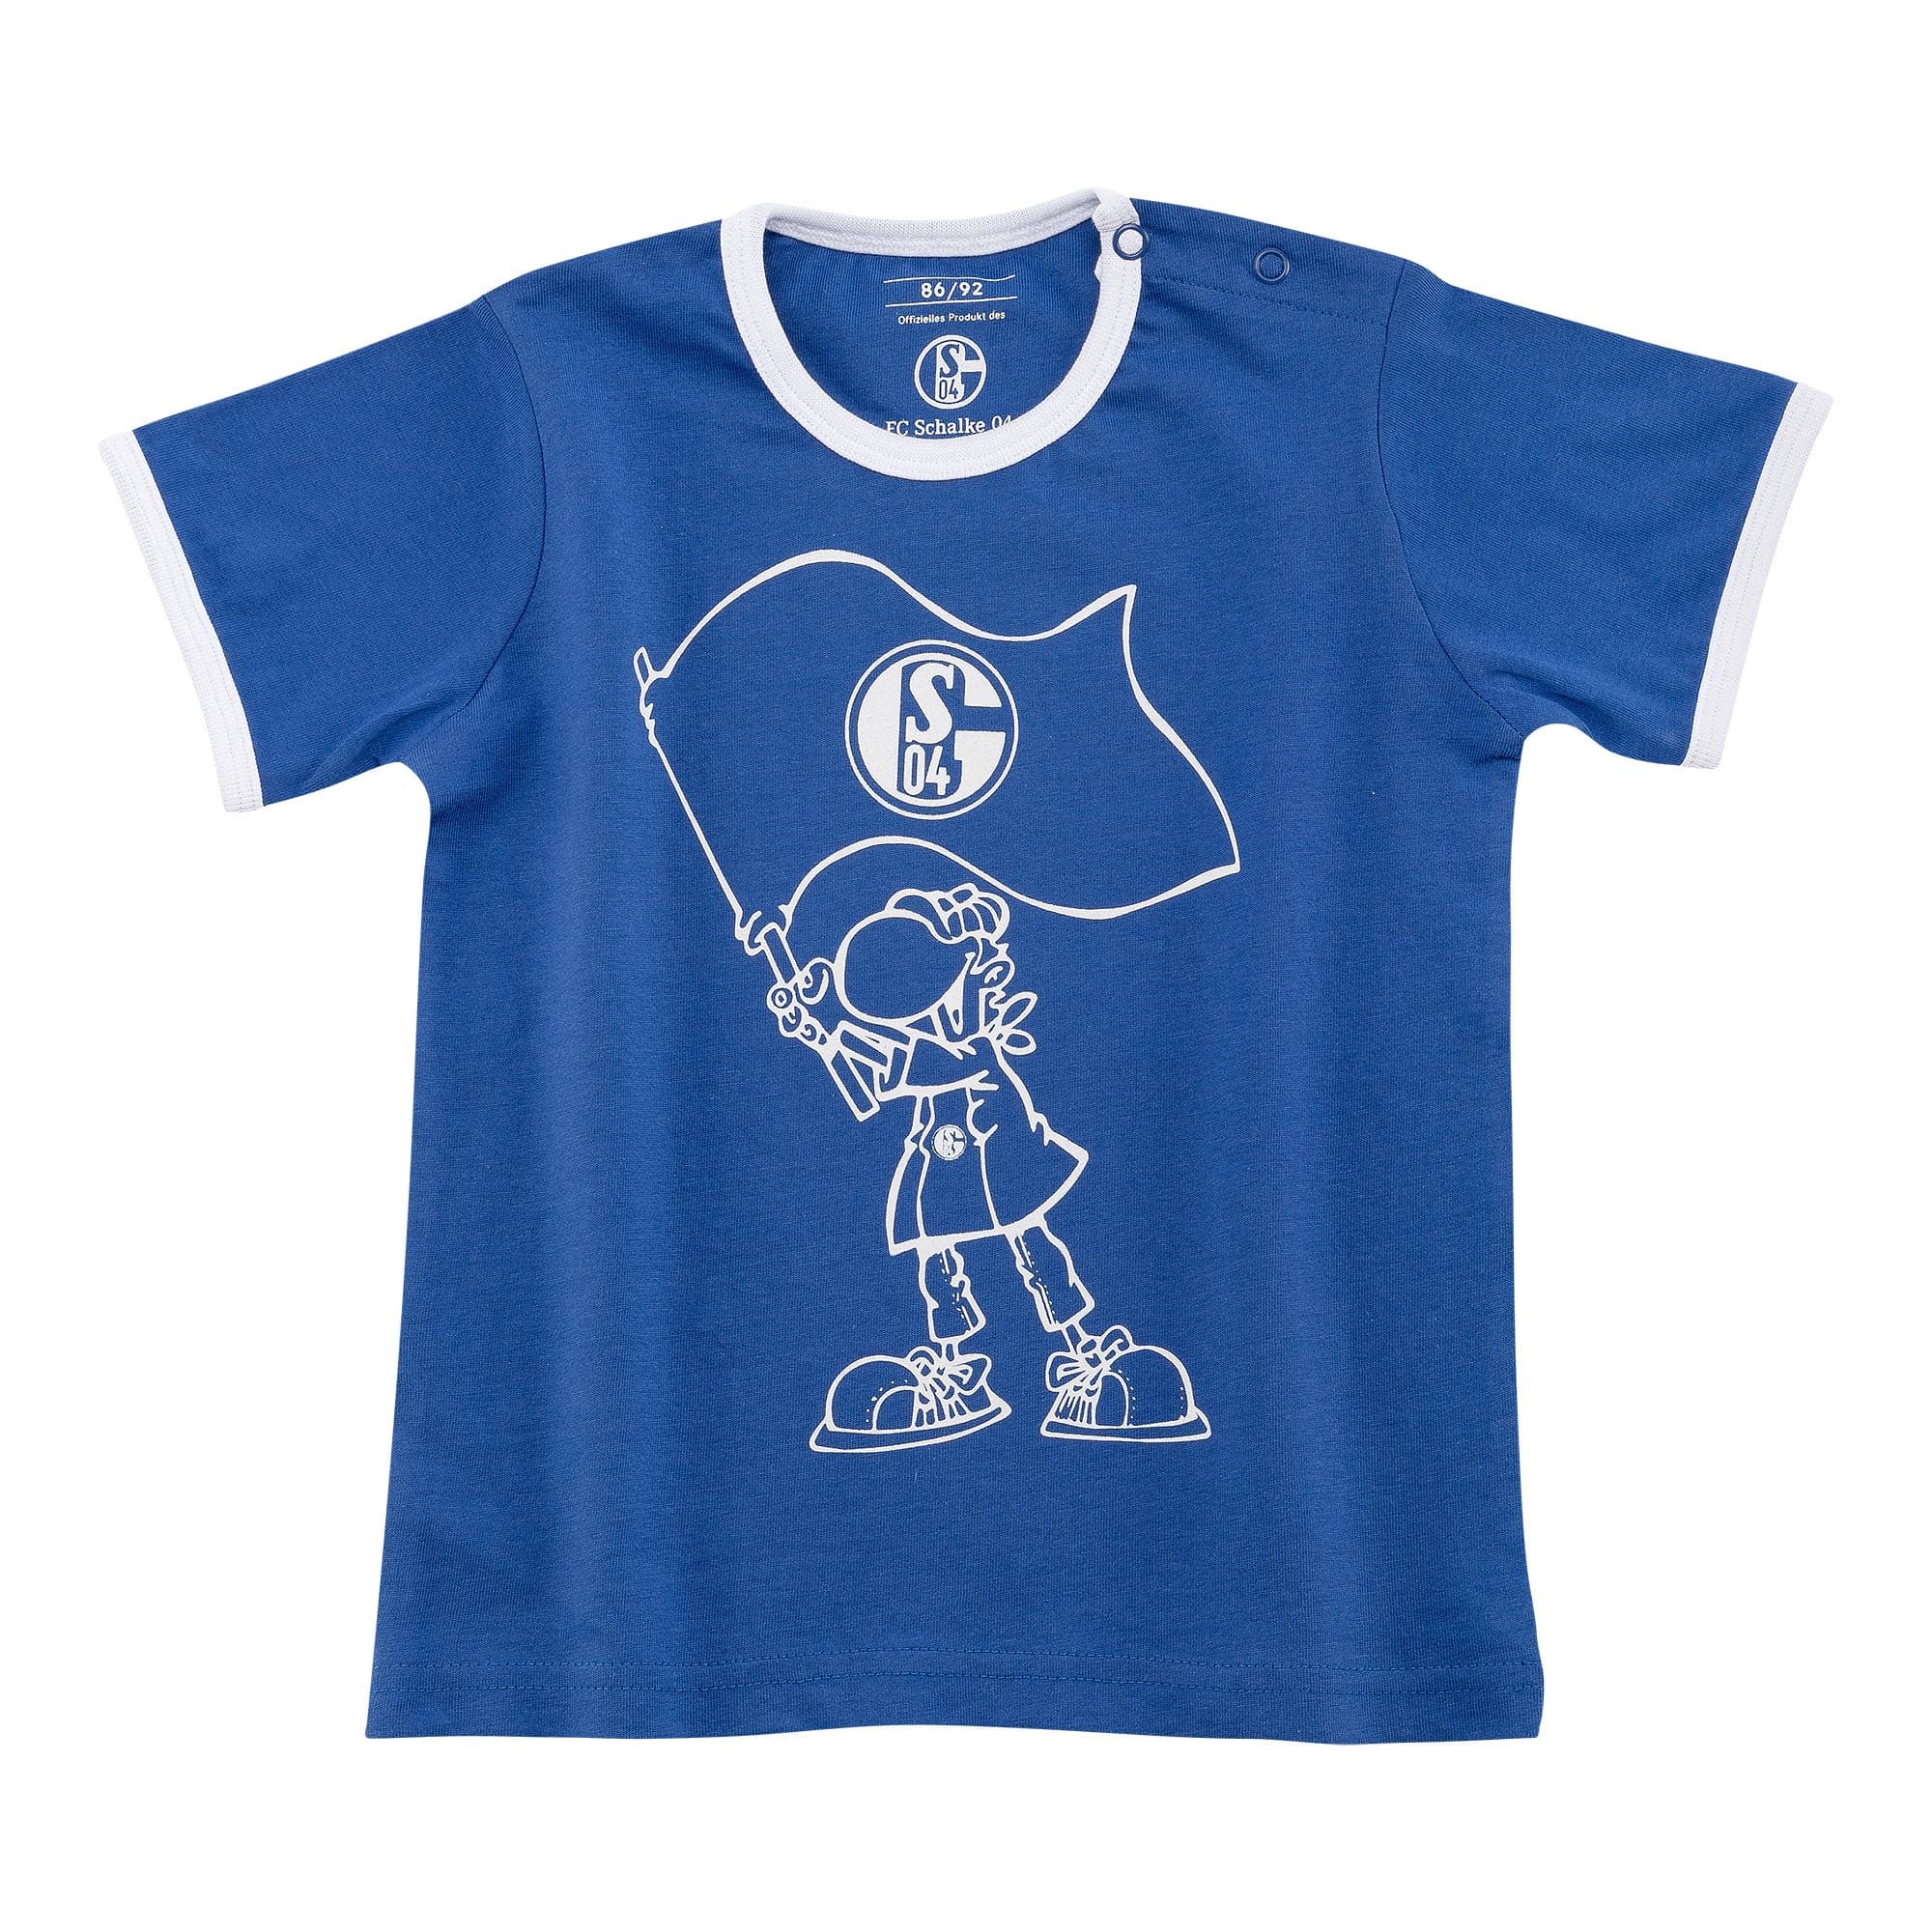 T-Shirt Baby Erwin königsblau